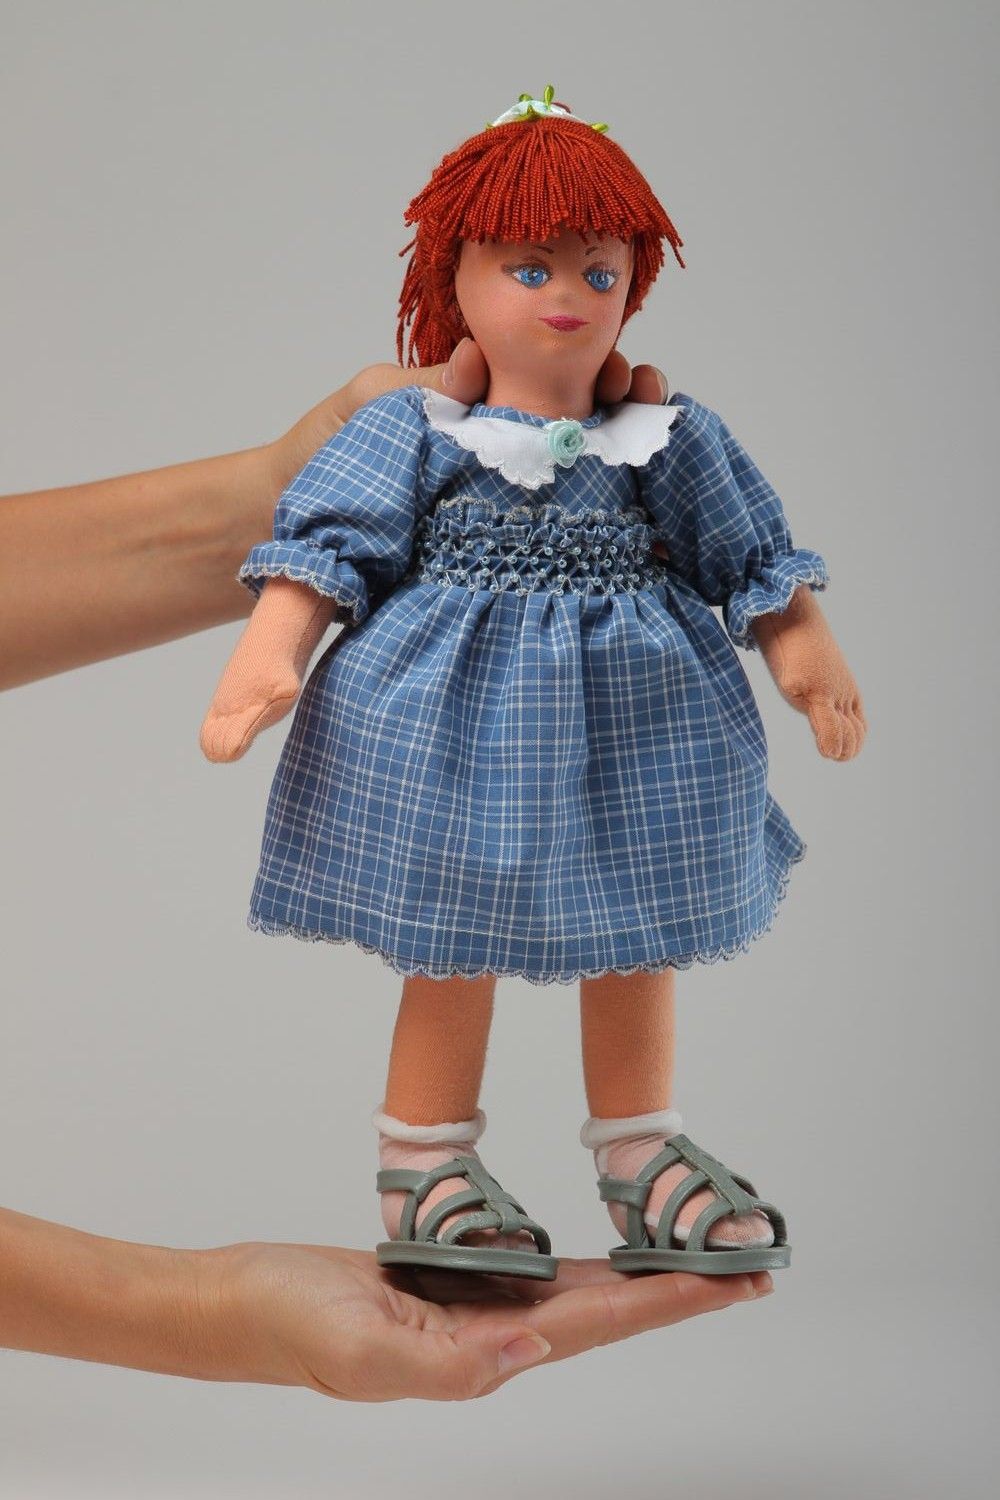 Кукла ручной работы кукла из ткани мягкая кукла расписанная акриловыми красками фото 2